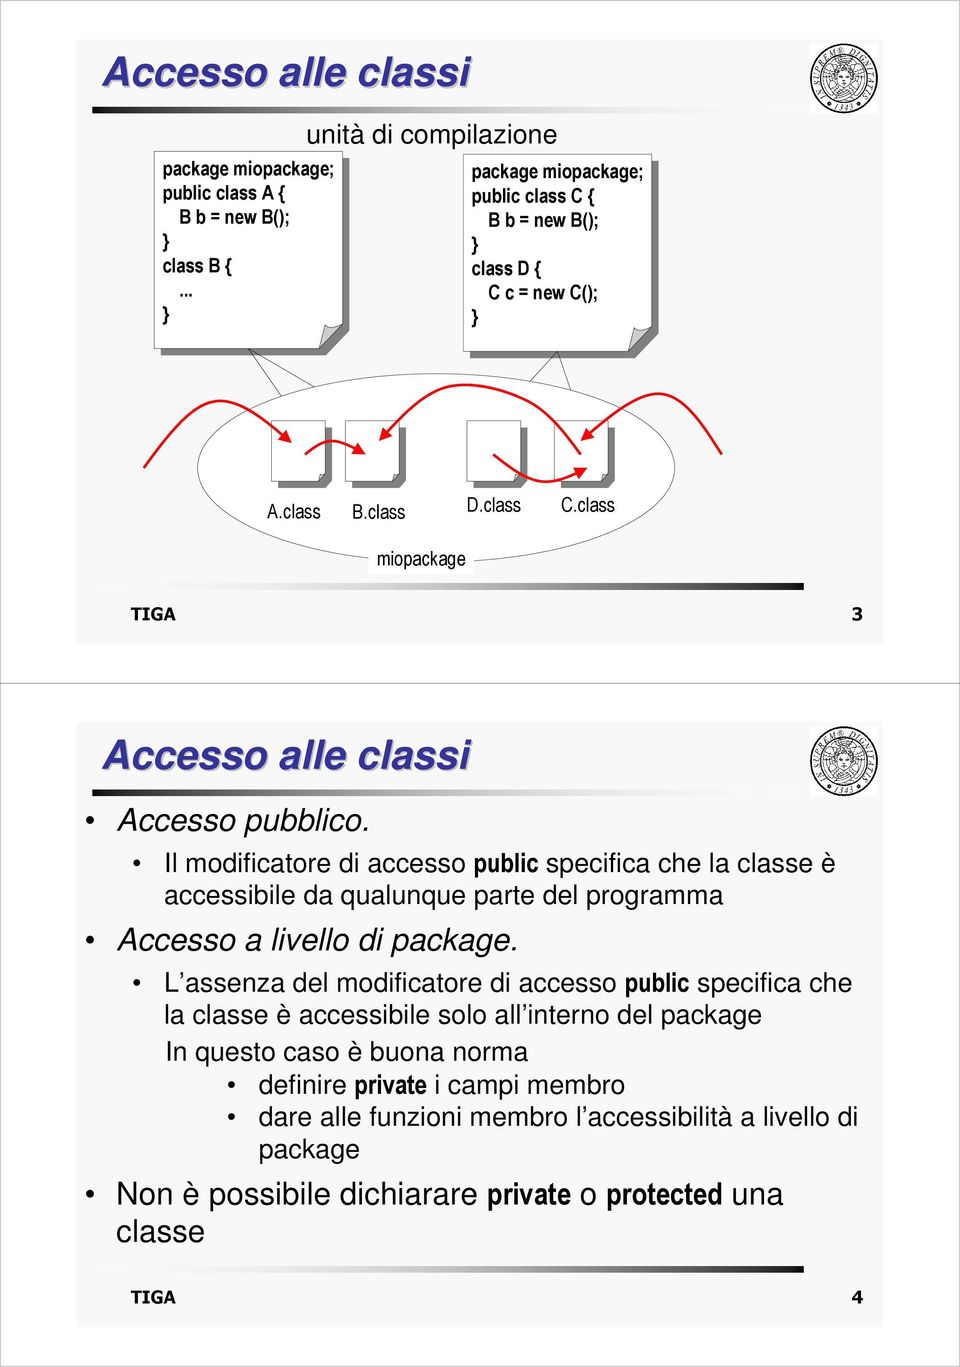 Il modificatore di accesso public specifica che la classe è accessibile da qualunque parte del programma Accesso a livello di package.